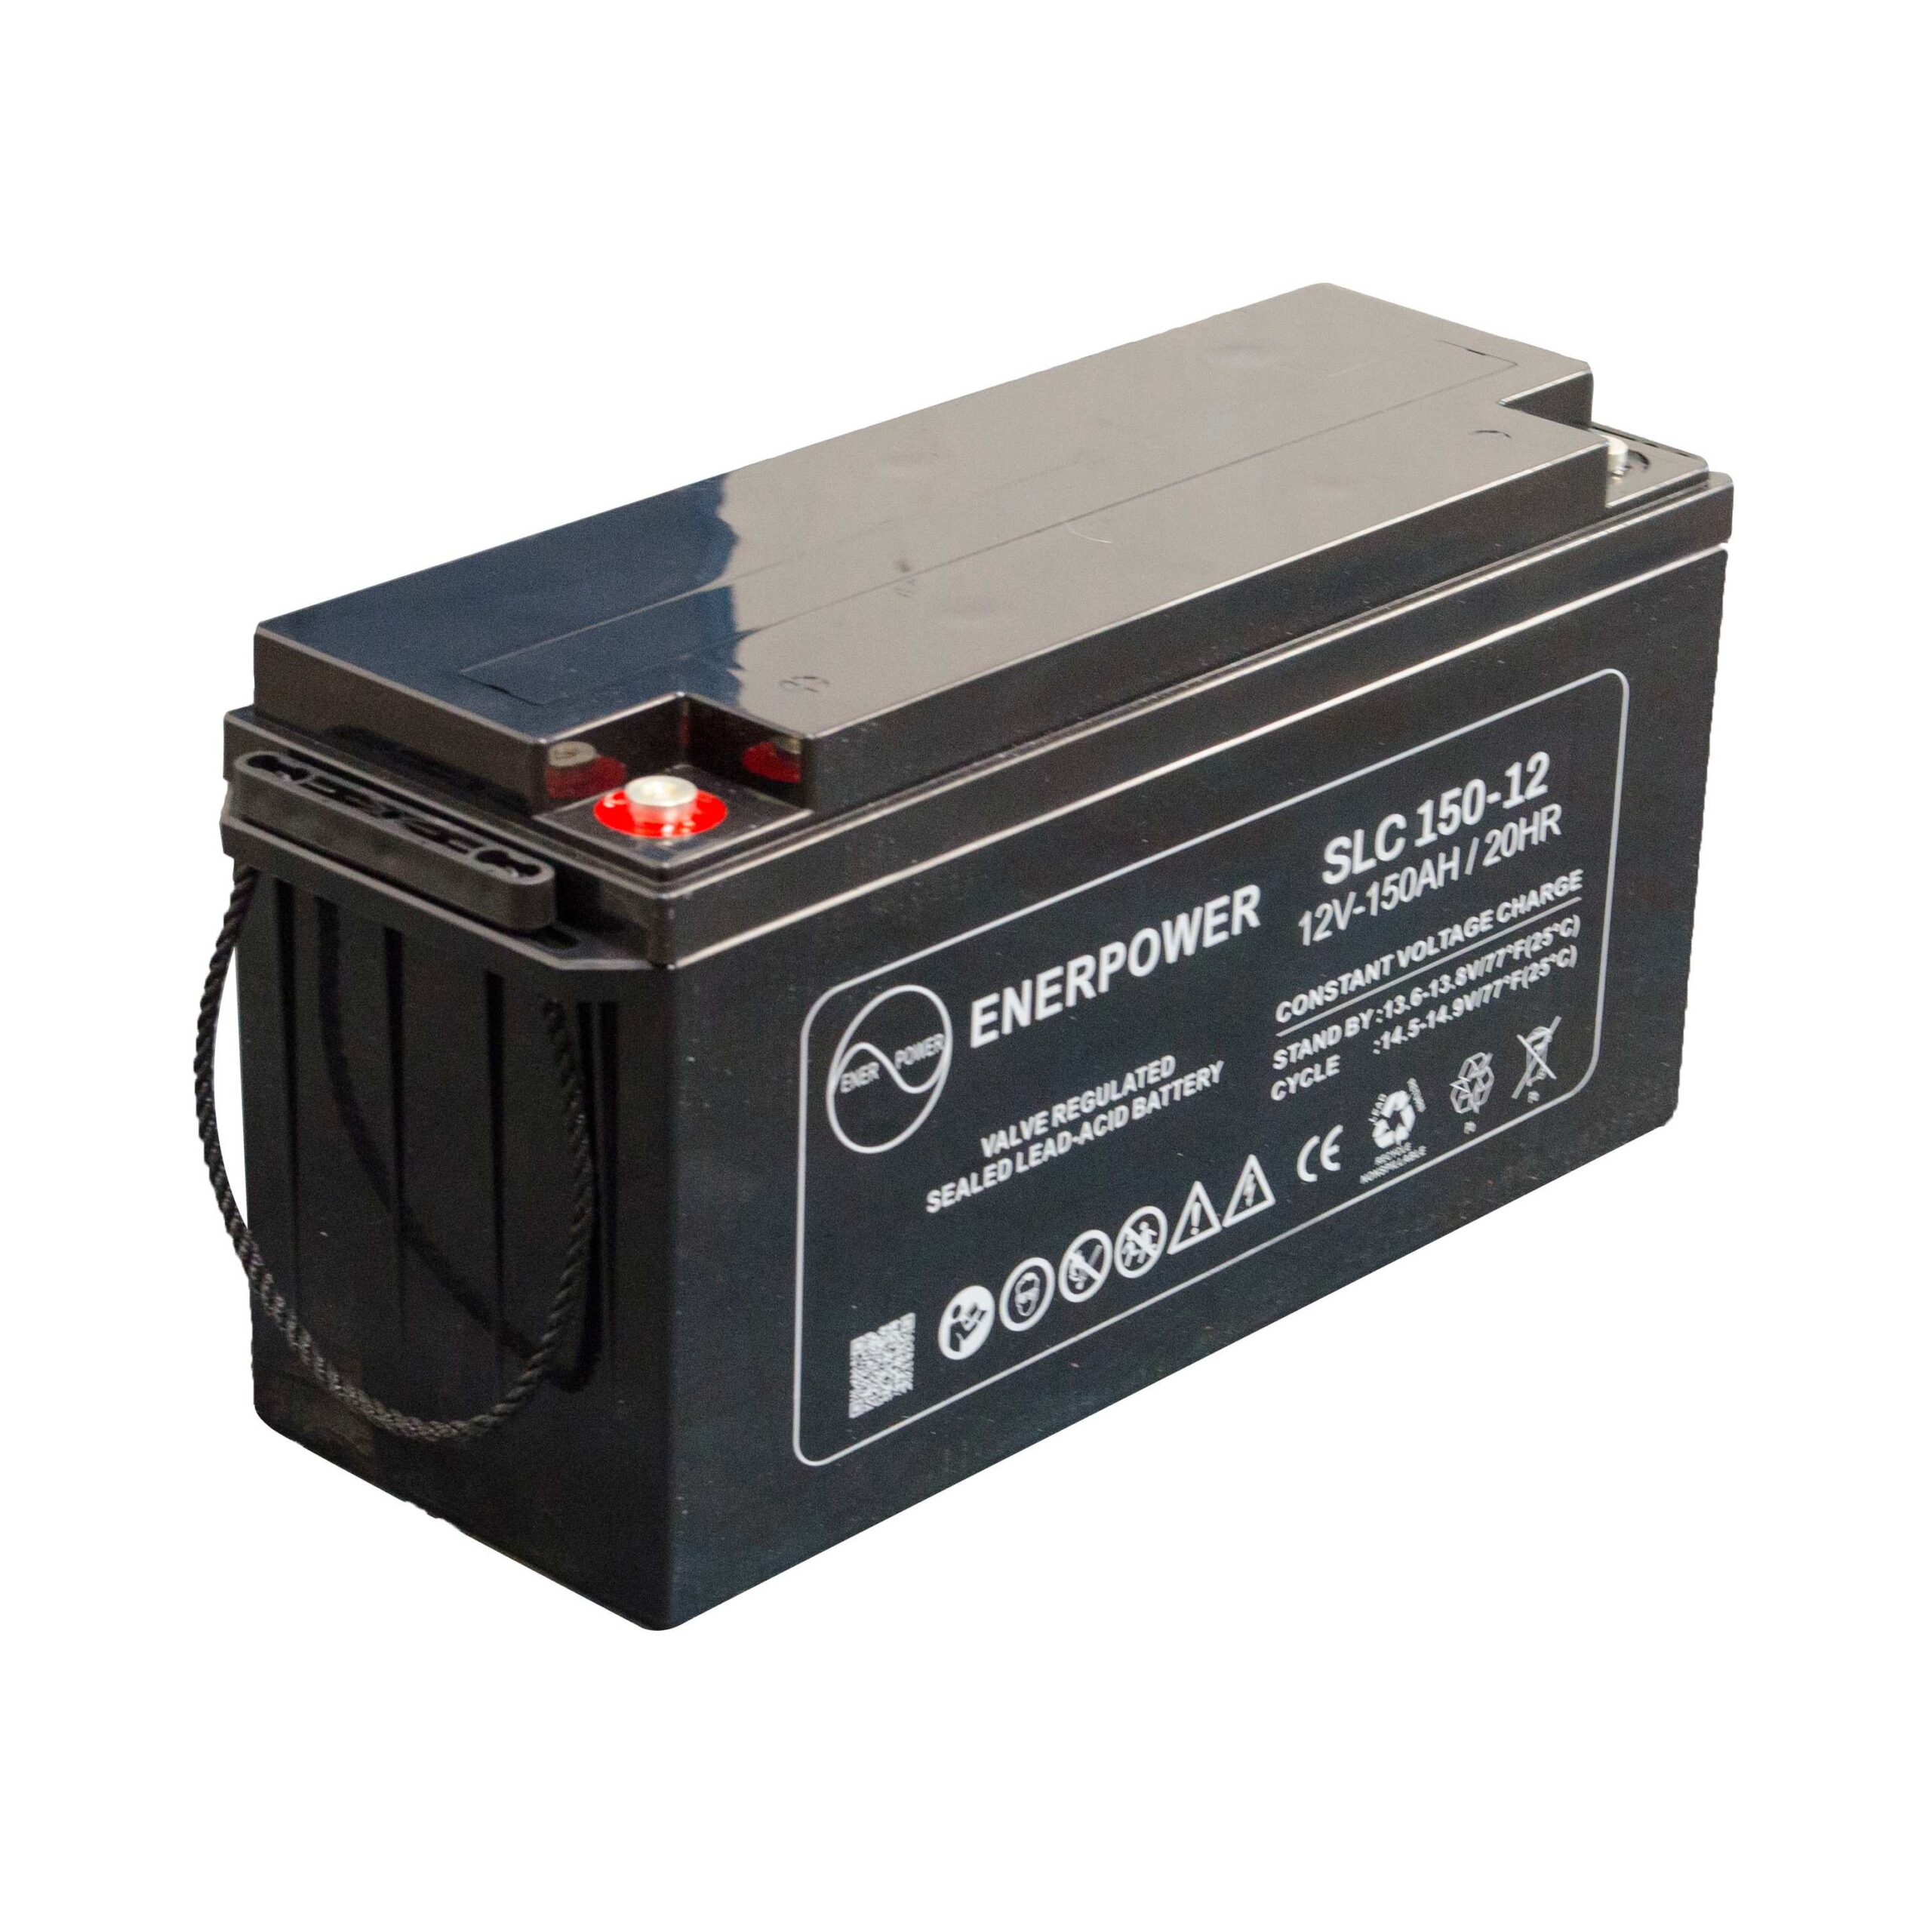 SLC 150-12 12V 150Ah AGM ENERPOWER Batterie